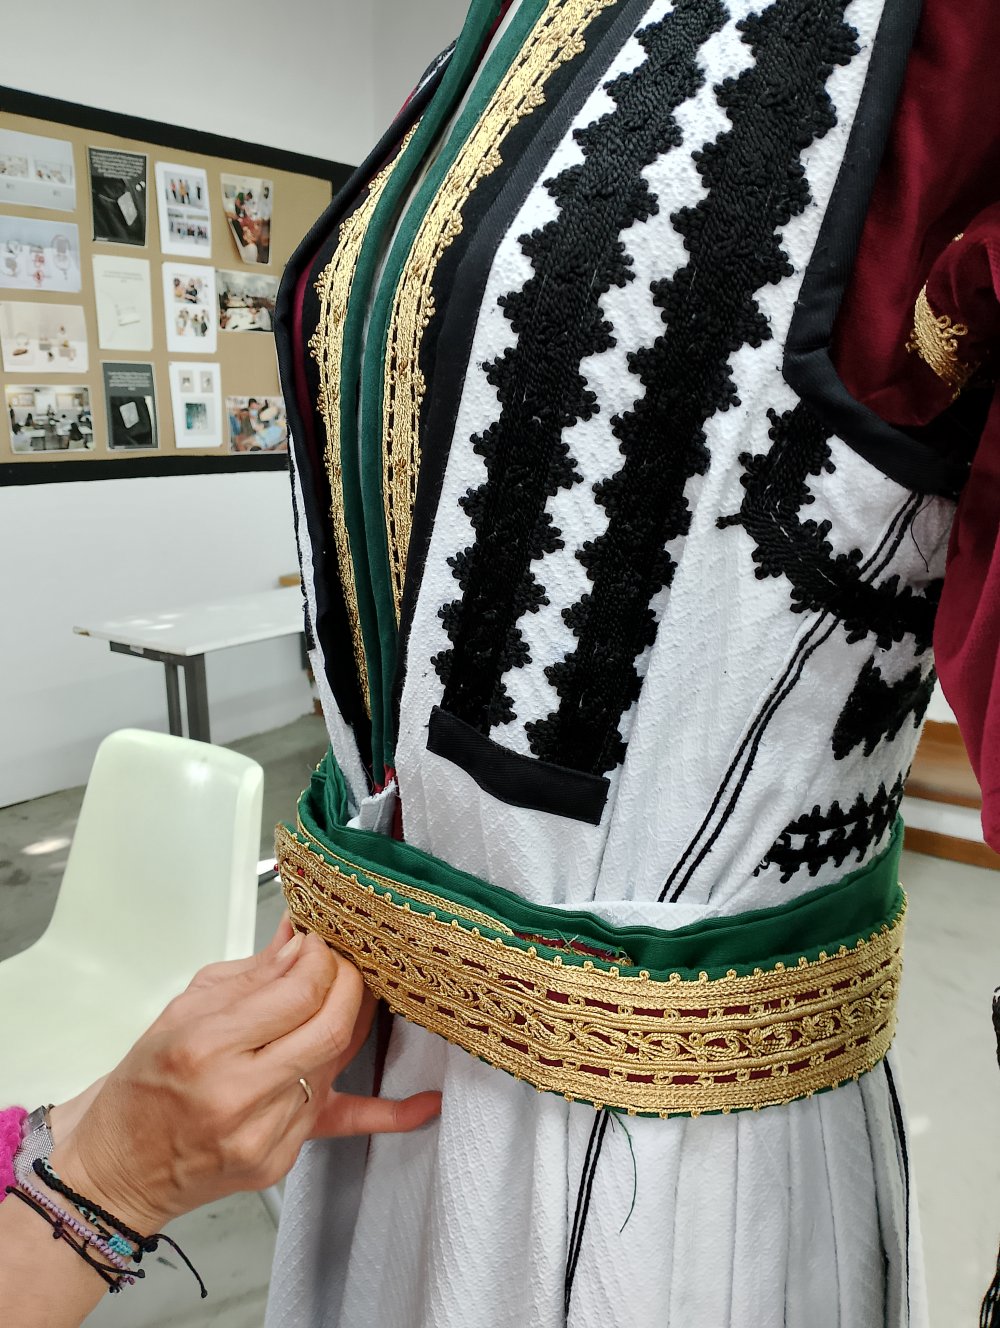 Παρουσίαση - σεμινάριο Παραδοσιακής Φορεσιάς  στην ΙΣΑΕΚ  ( ΙΙΕΚ ) Δήμου Βόλου